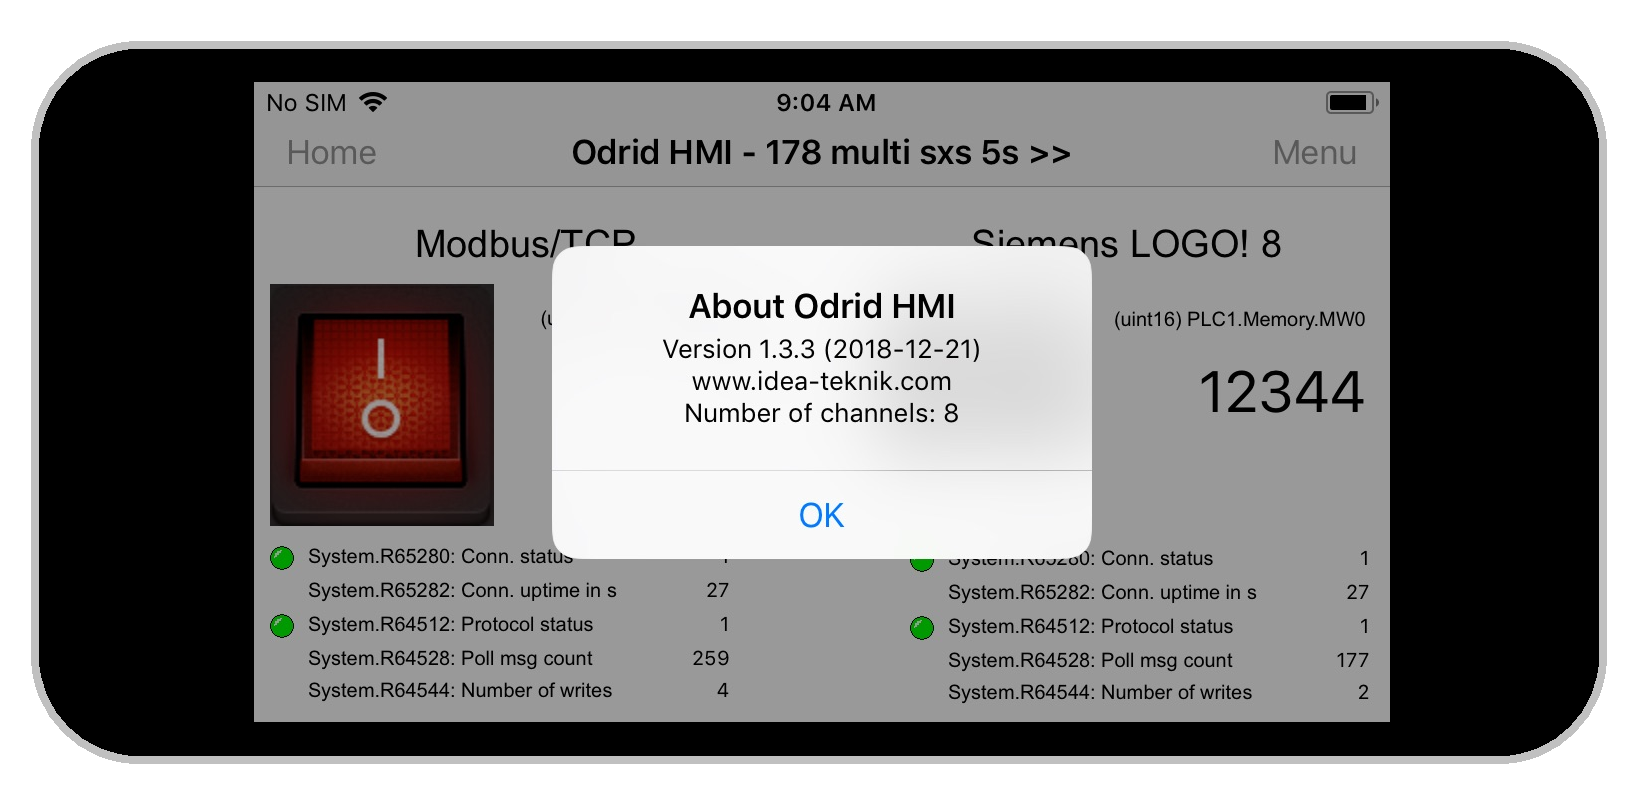 Odrid HMI 1.3.3 on an Iphone 5s